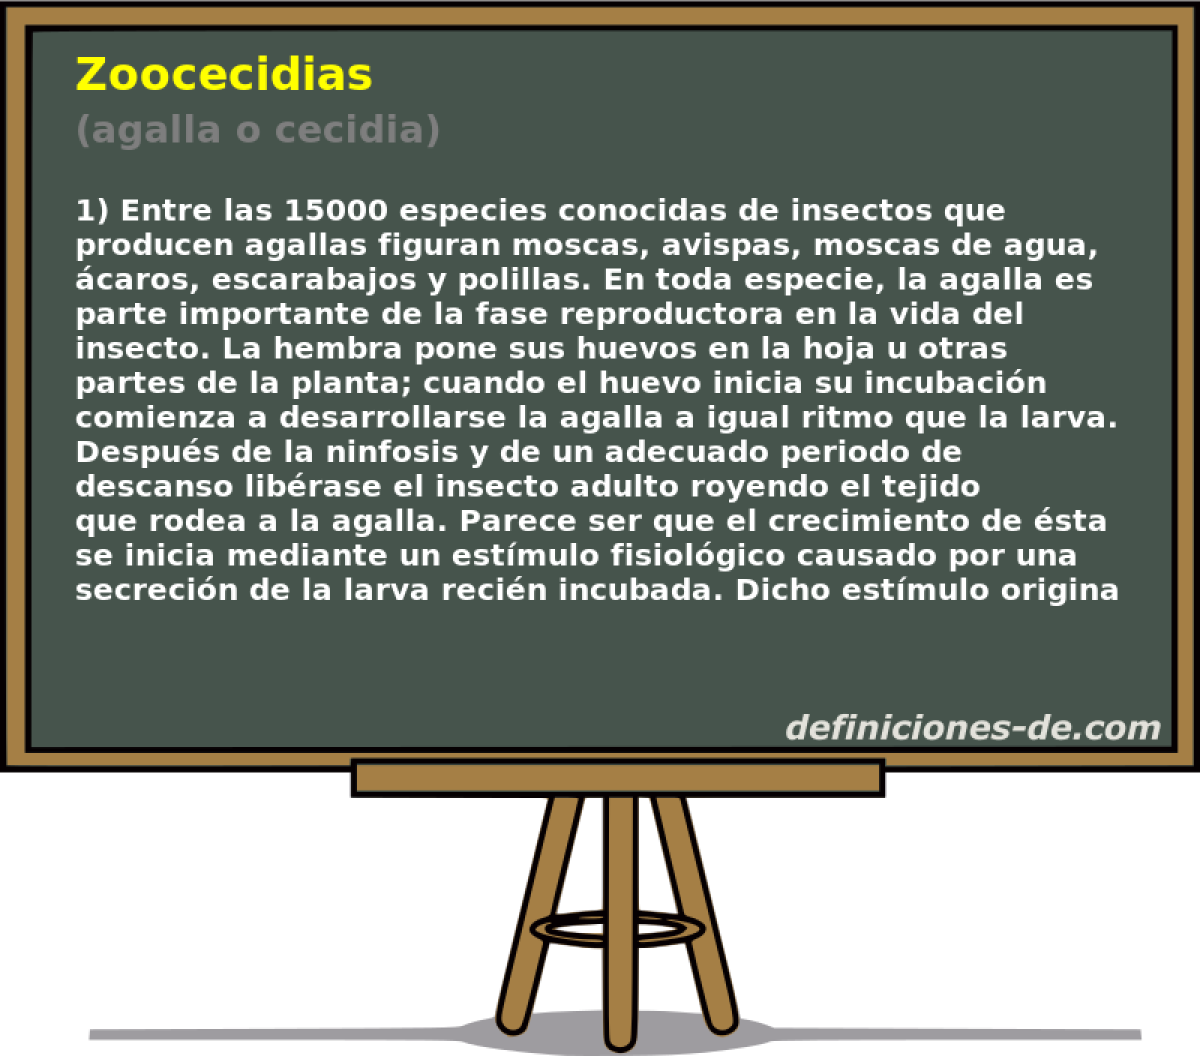 Zoocecidias (agalla o cecidia)